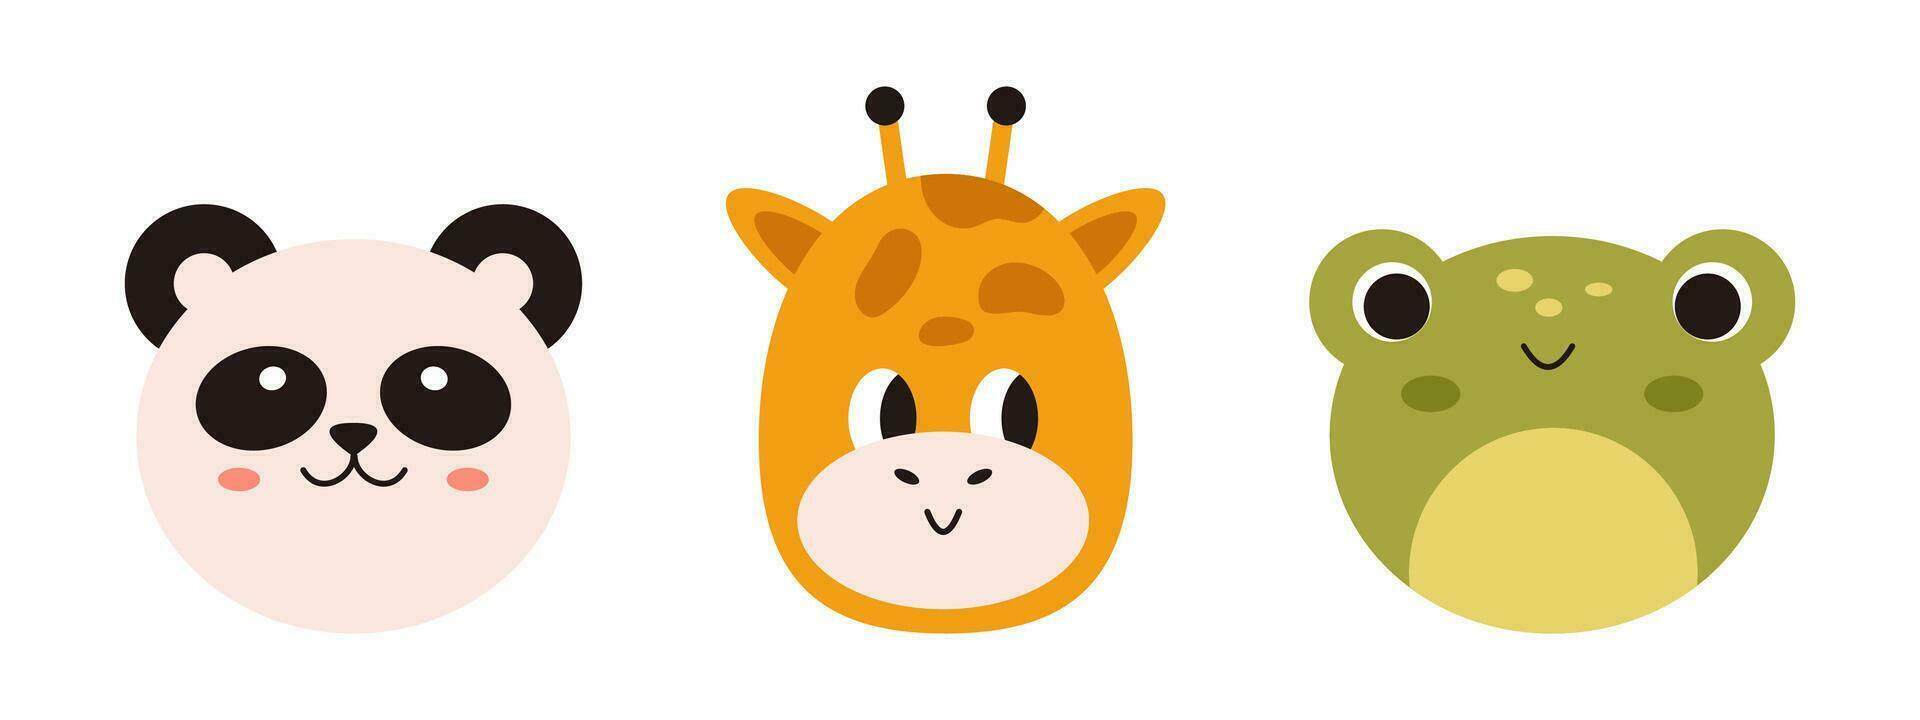 vector conjunto con kawaii animal caras. diseño para niños. bebé rana, panda y jirafa cabezas linda infantil sonriente animal recopilación. gracioso animales en plano diseño.